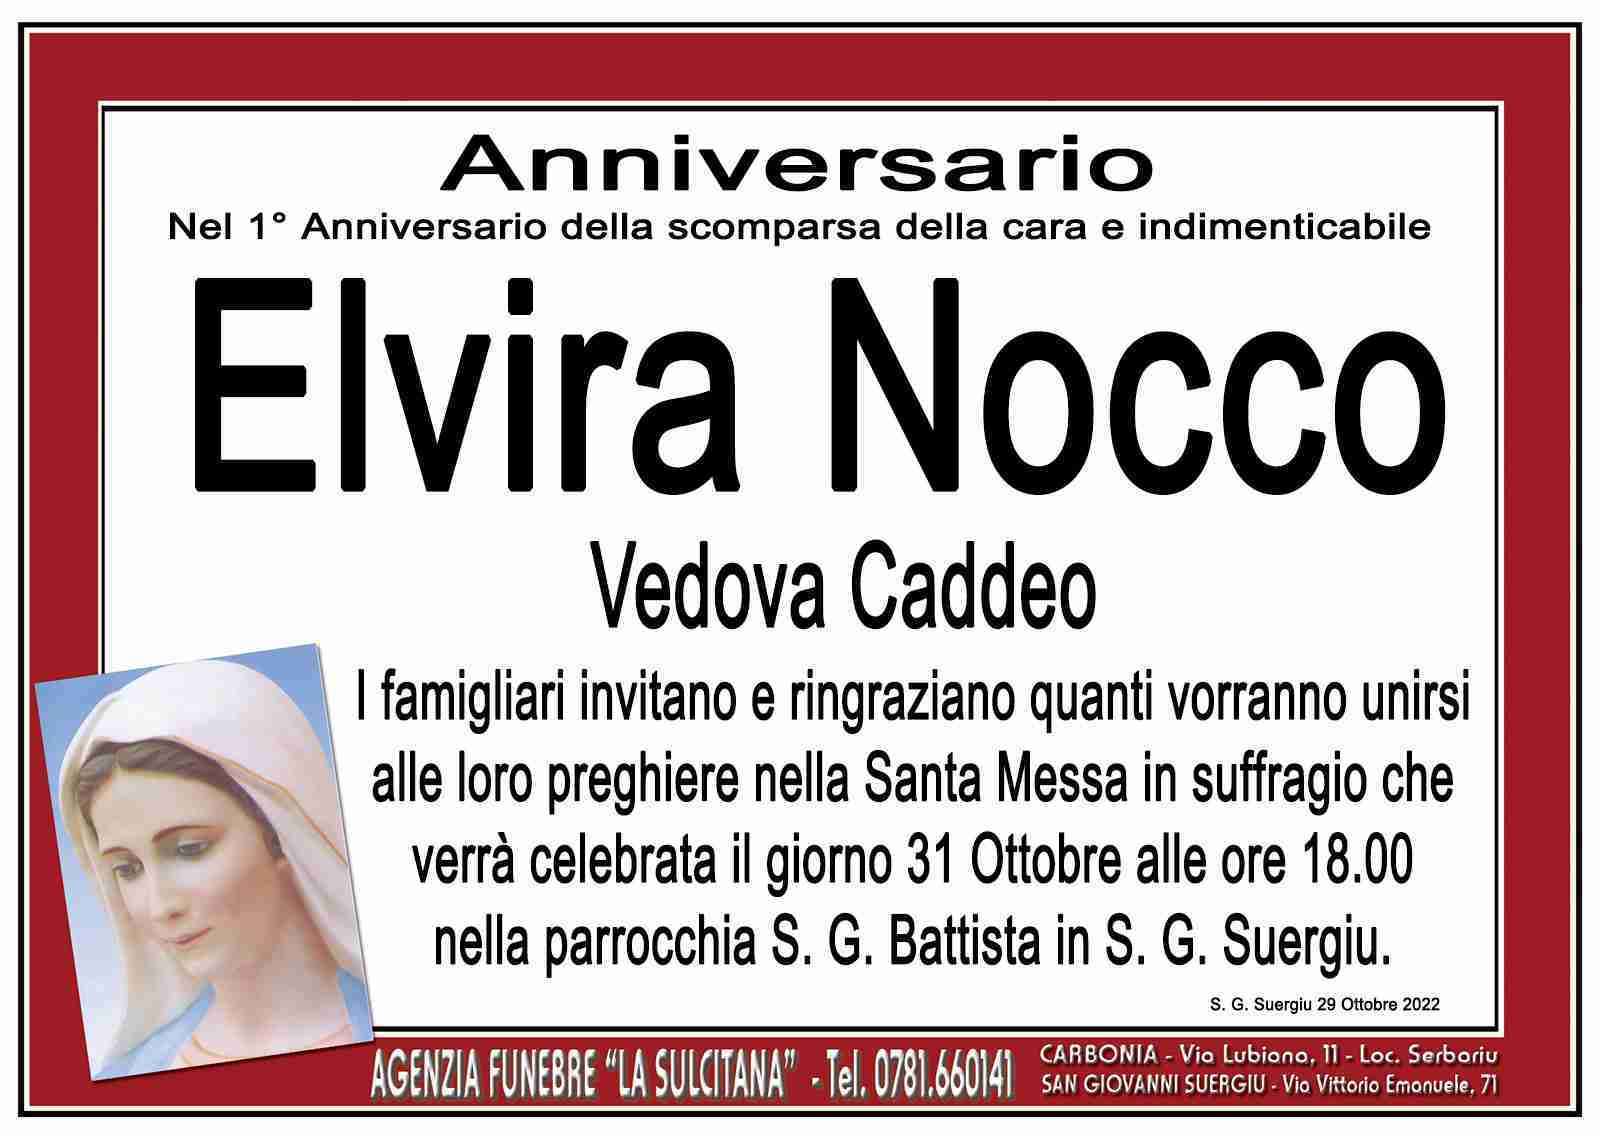 Elvira Nocco